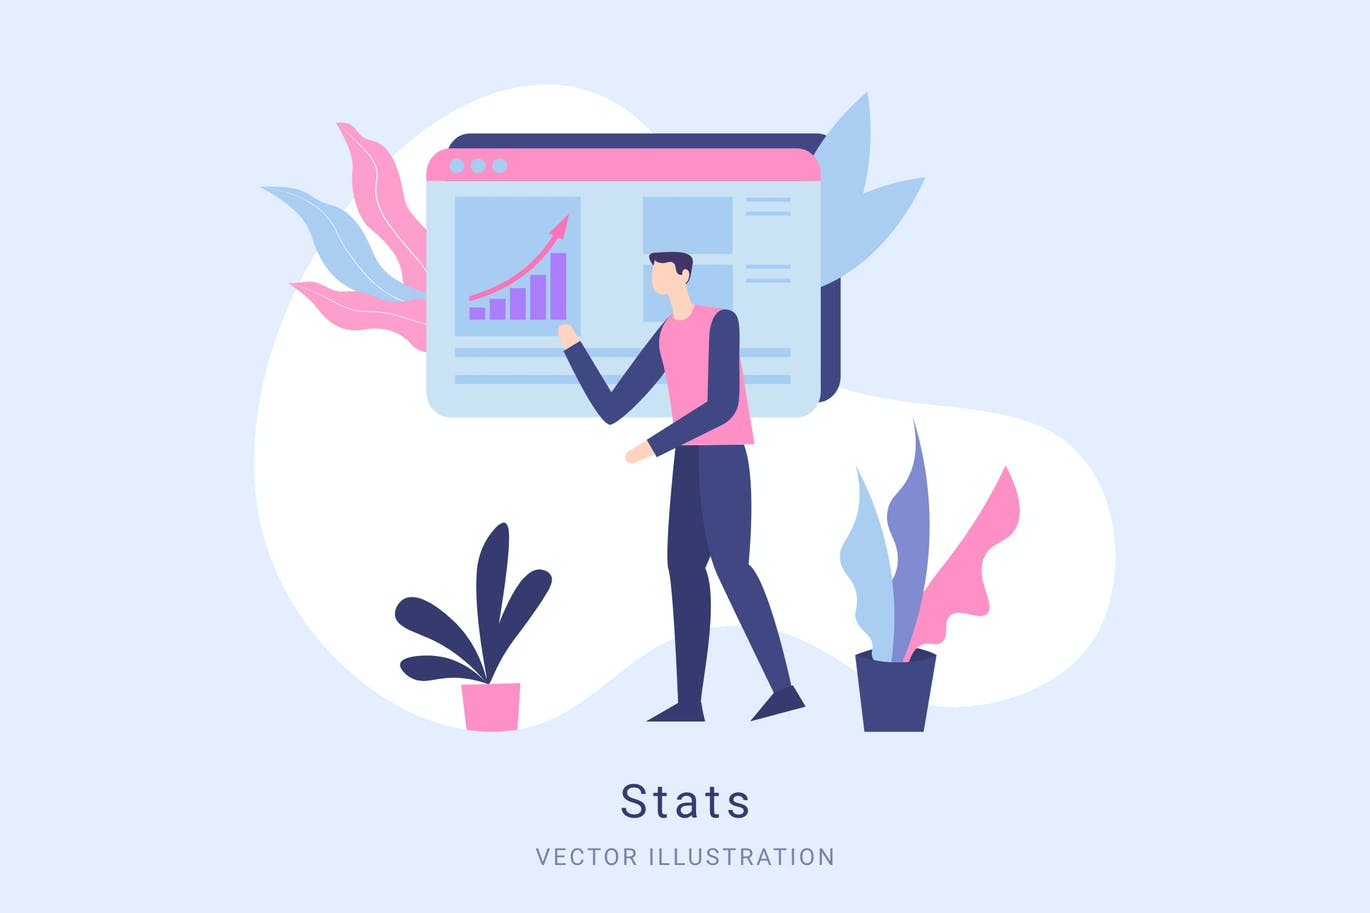 数据统计矢量第一素材精选概念插画设计素材 Stats Vector Illustration Scene插图